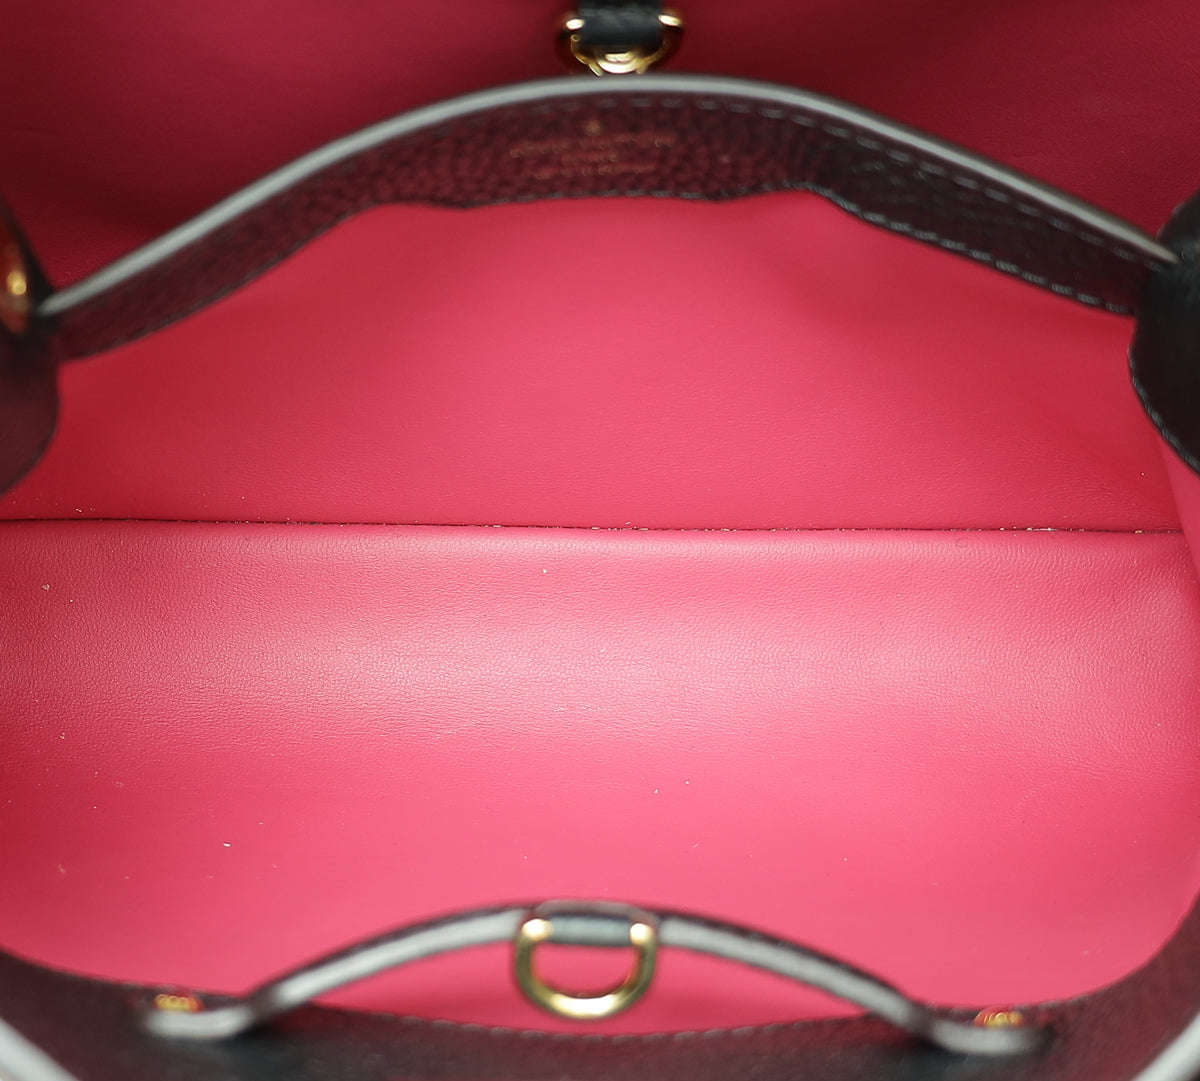 Louis Vuitton Noir Cuir Capucines BB Bag